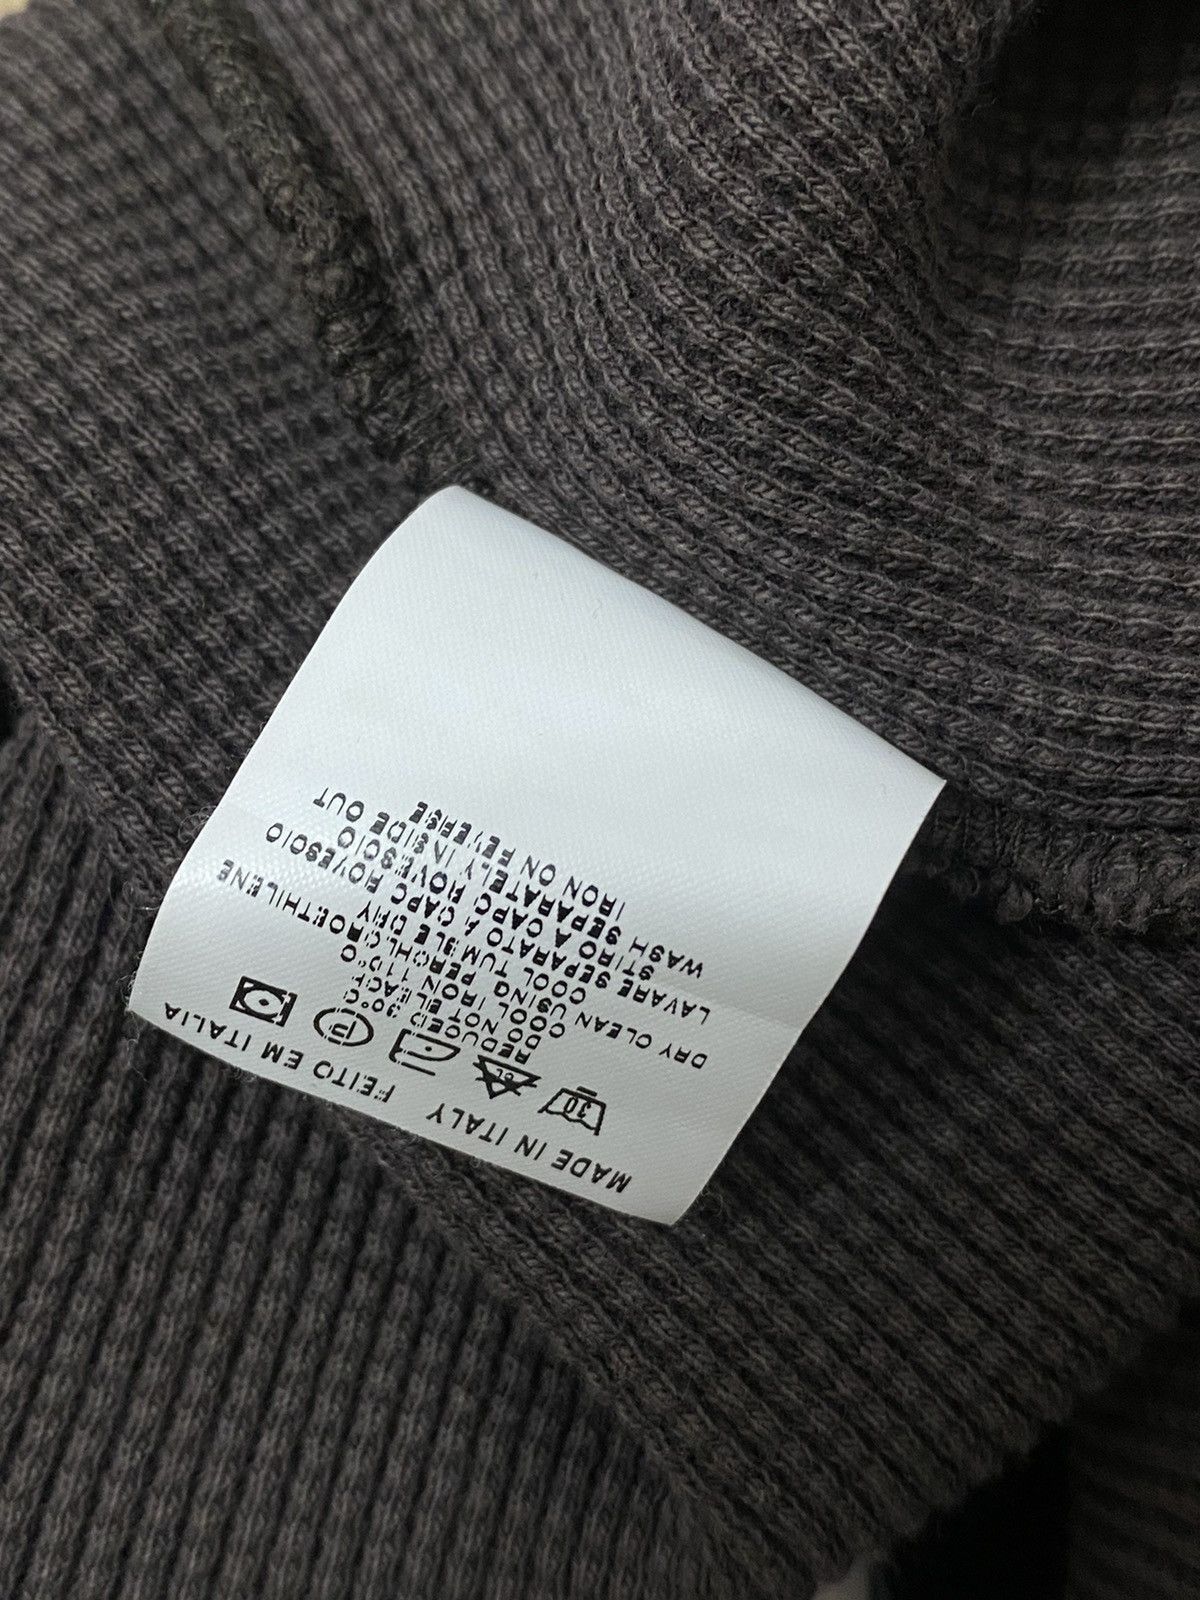 Jean Paul Gaultier JPG Men’s Knit Sweater Size US S / EU 44-46 / 1 - 9 Preview